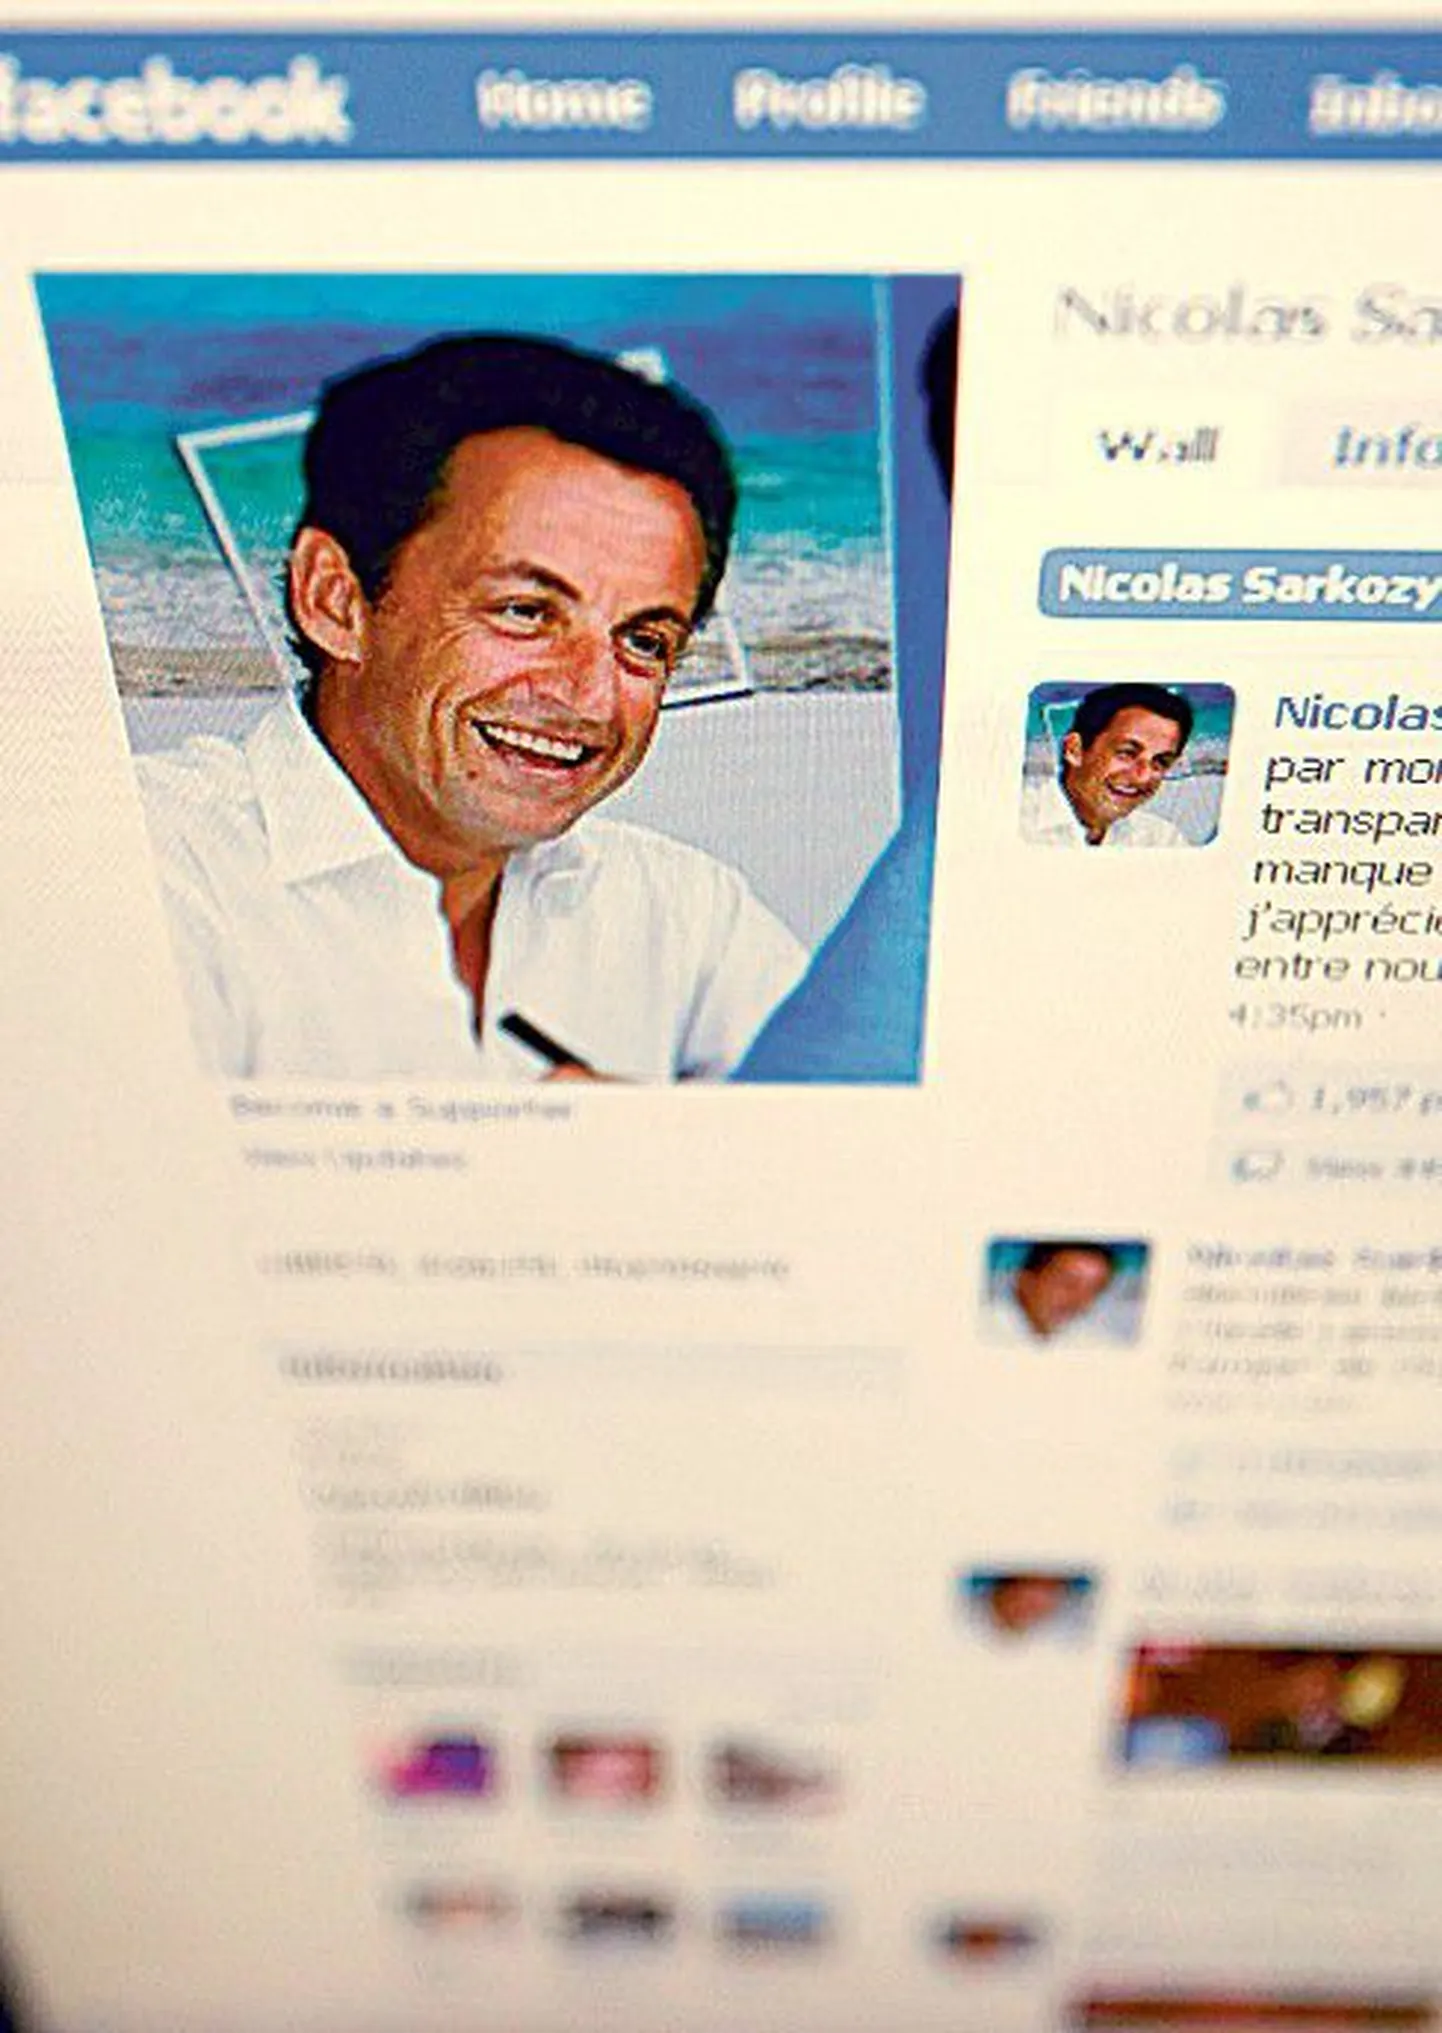 Facebookis on oma lehekülg ka Prantsusmaa presidendil Nicolas Sarkozyl.